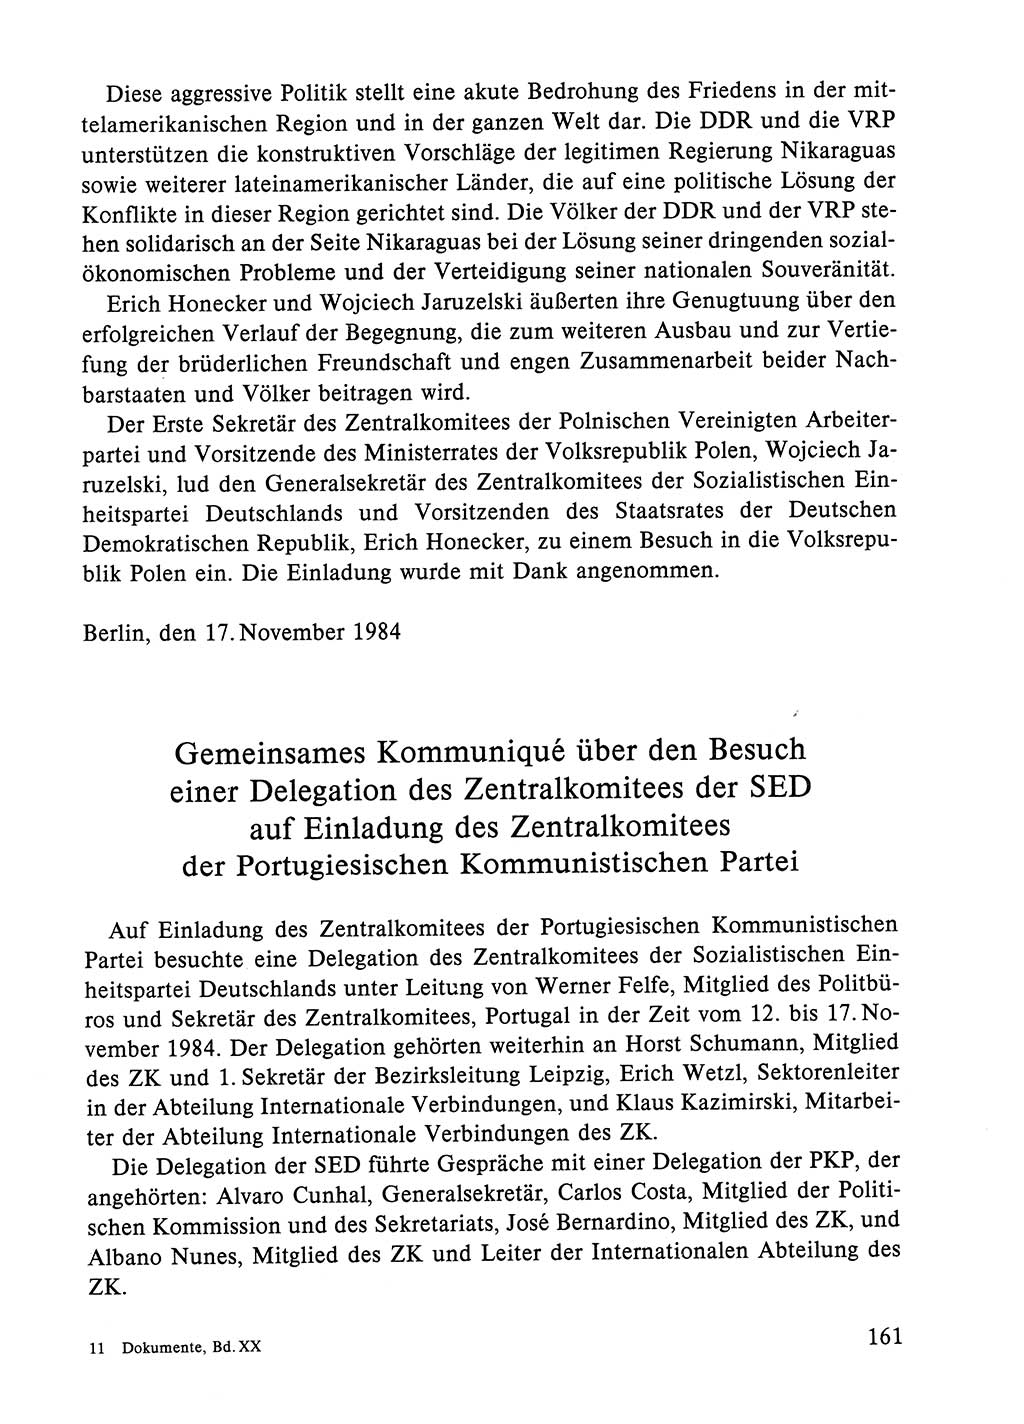 Dokumente der Sozialistischen Einheitspartei Deutschlands (SED) [Deutsche Demokratische Republik (DDR)] 1984-1985, Seite 266 (Dok. SED DDR 1984-1985, S. 266)